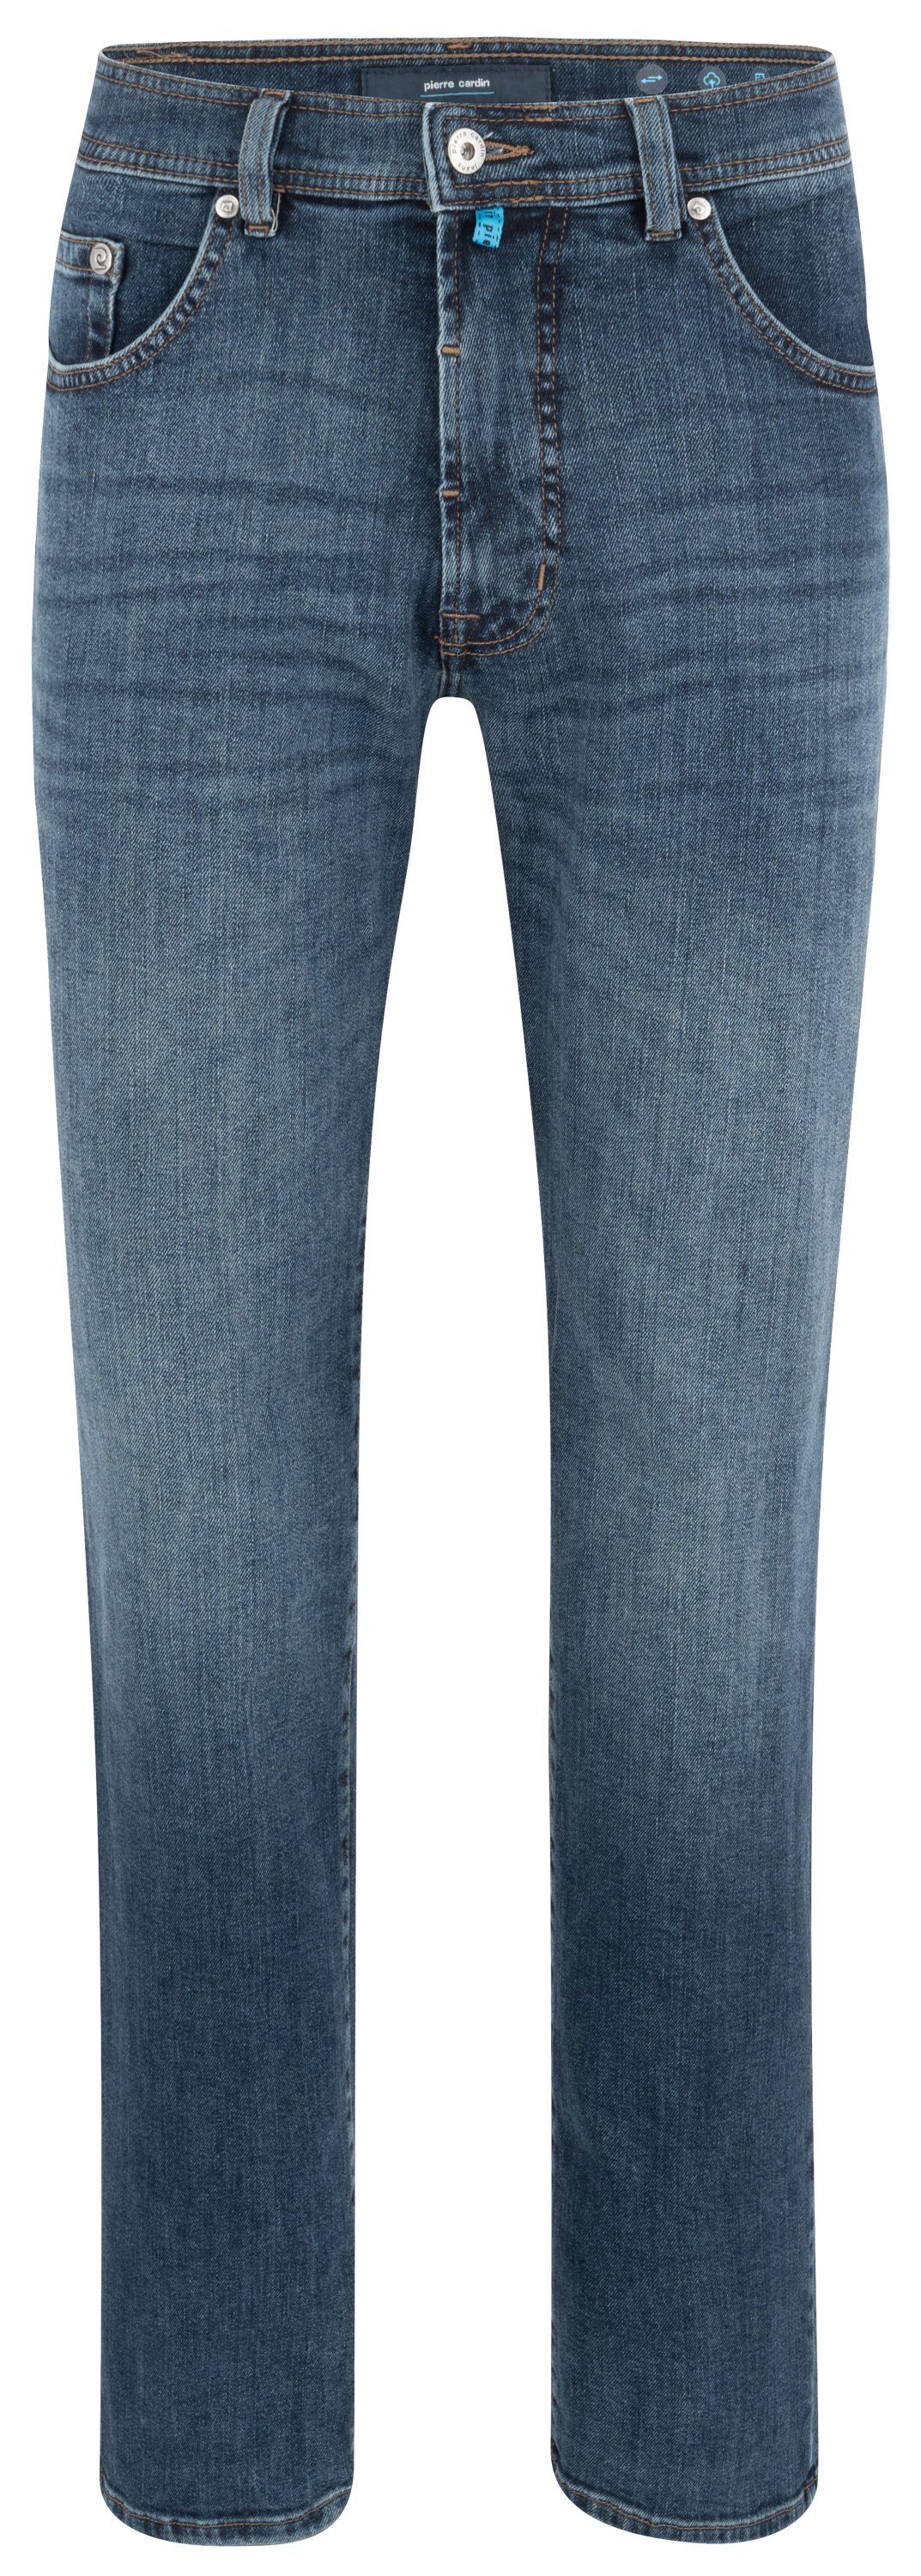 Pierre Cardin 5-Pocket-Jeans PIERRE used 7724.6834 CARDIN DIJON blue ocean buffies 32310